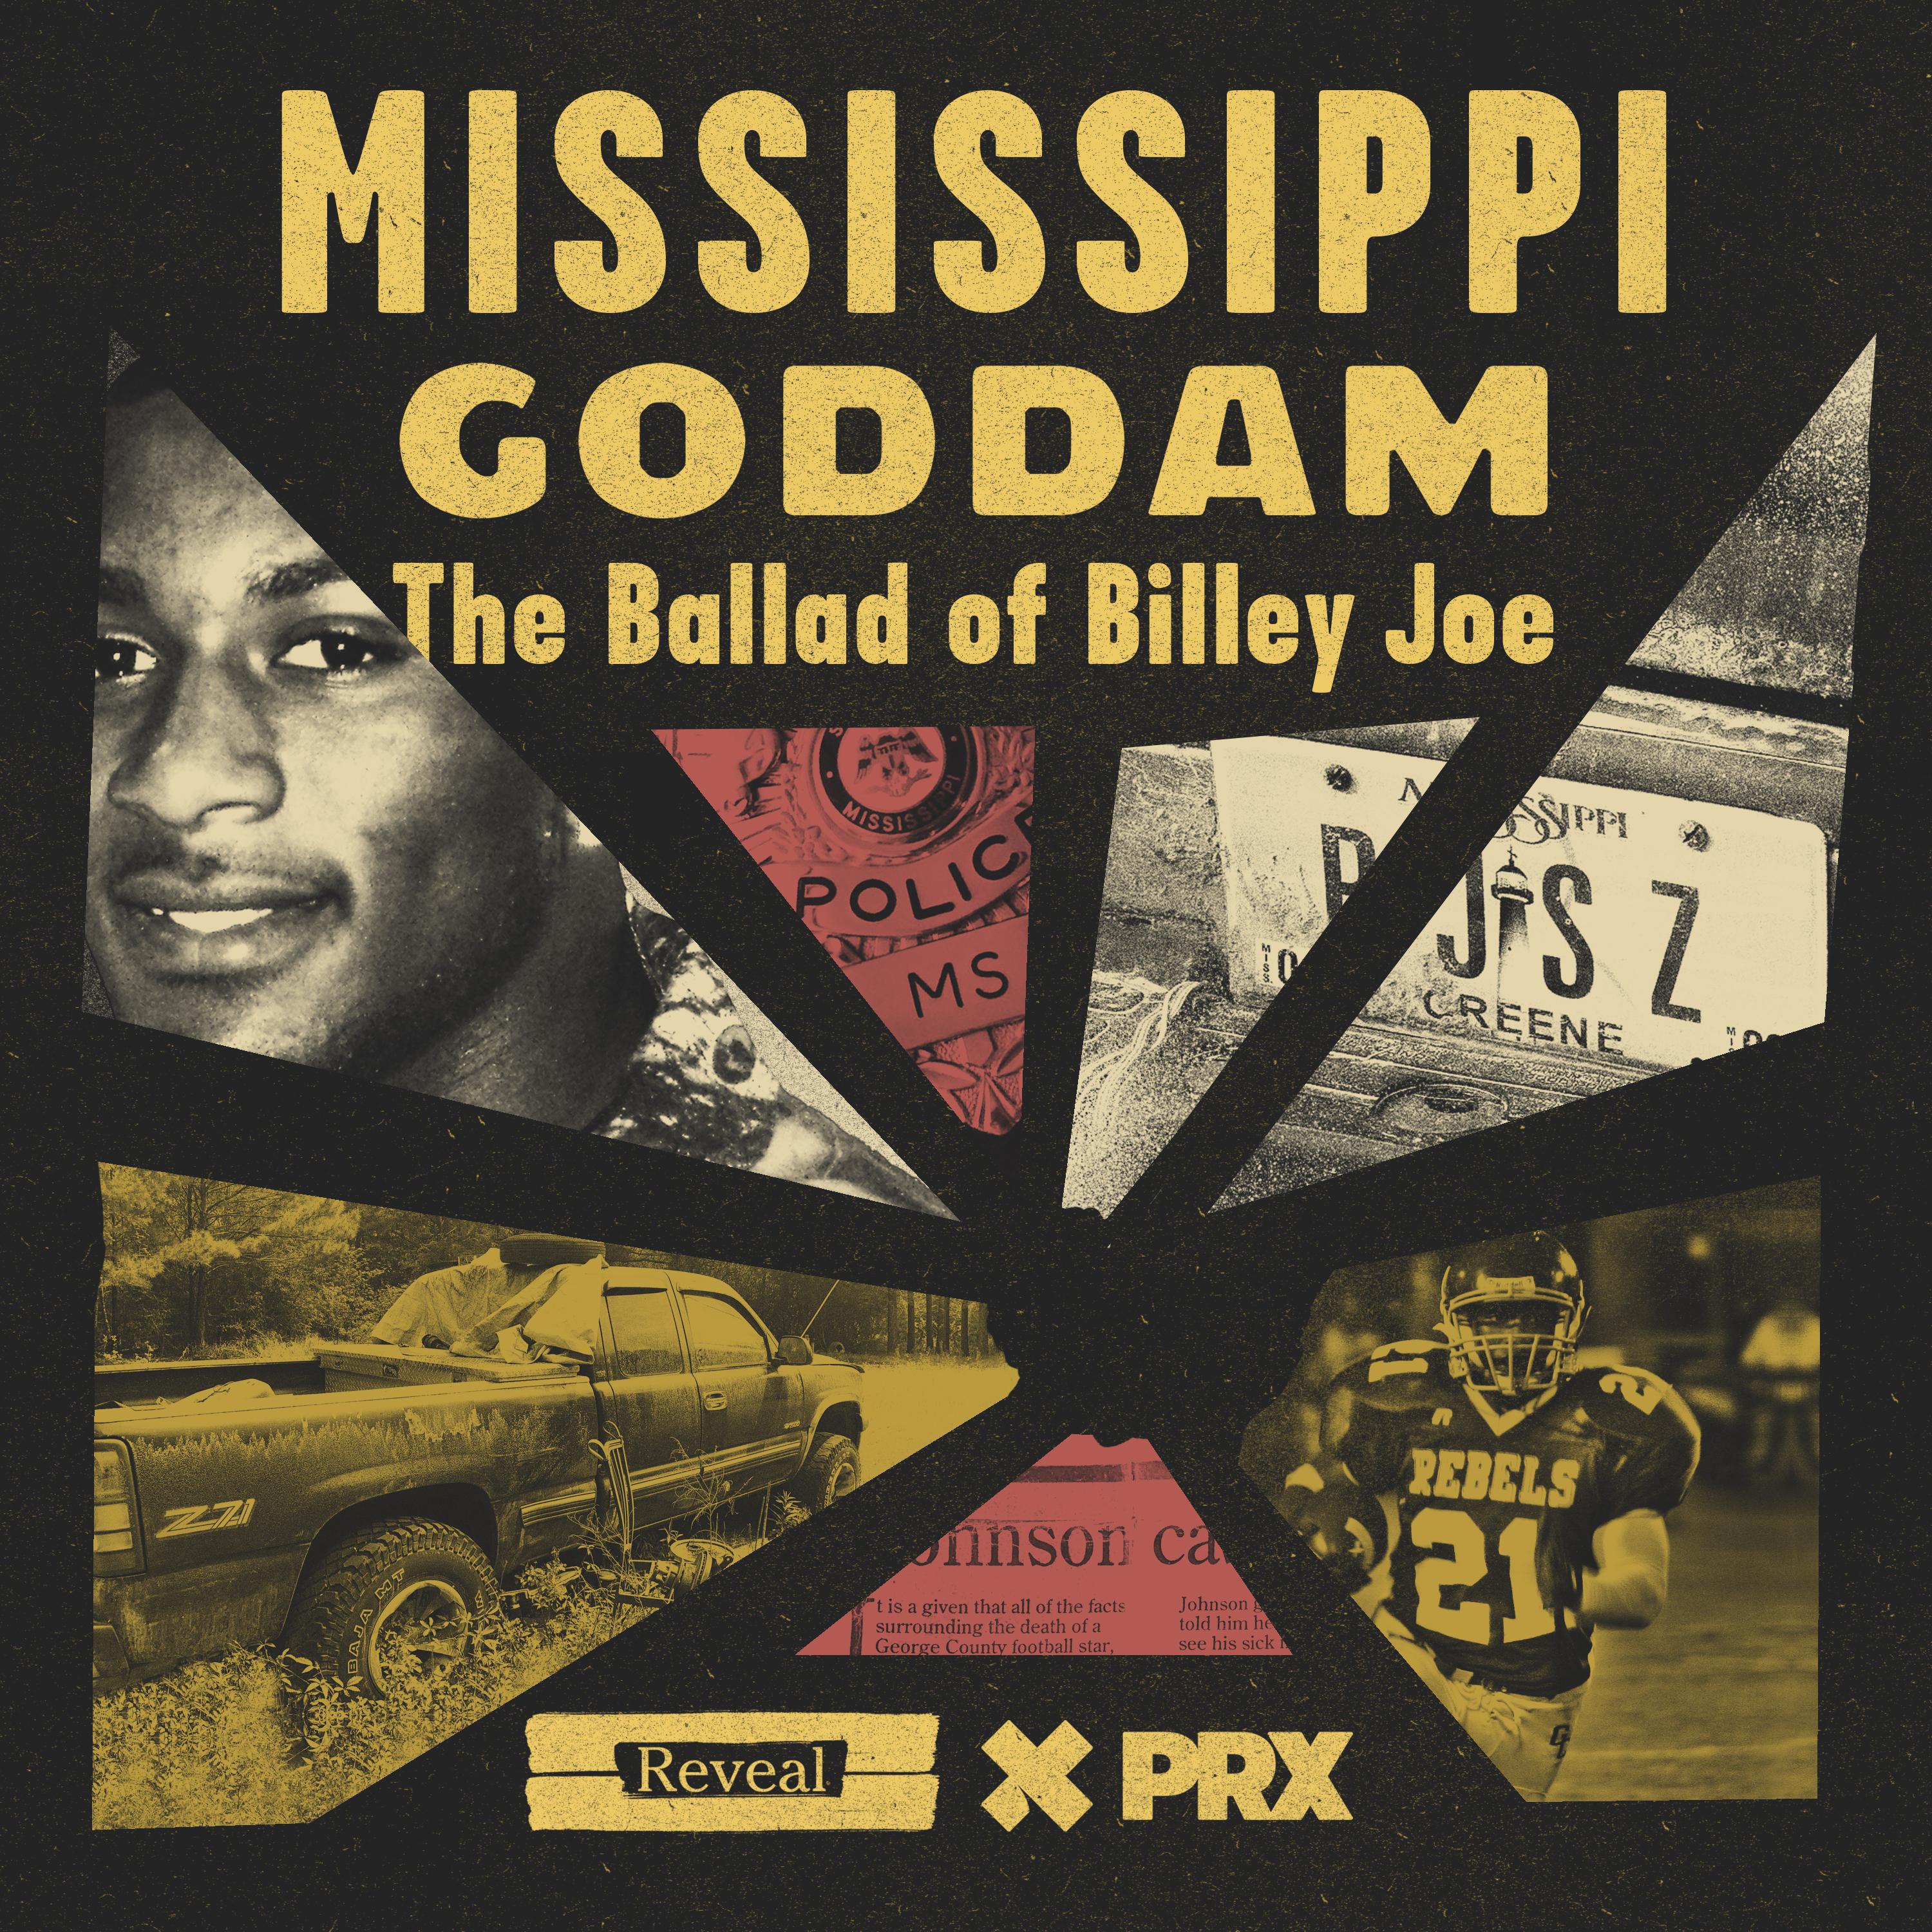 Thumbnail for "Mississippi Goddam Chapter 5: Star Crossed".